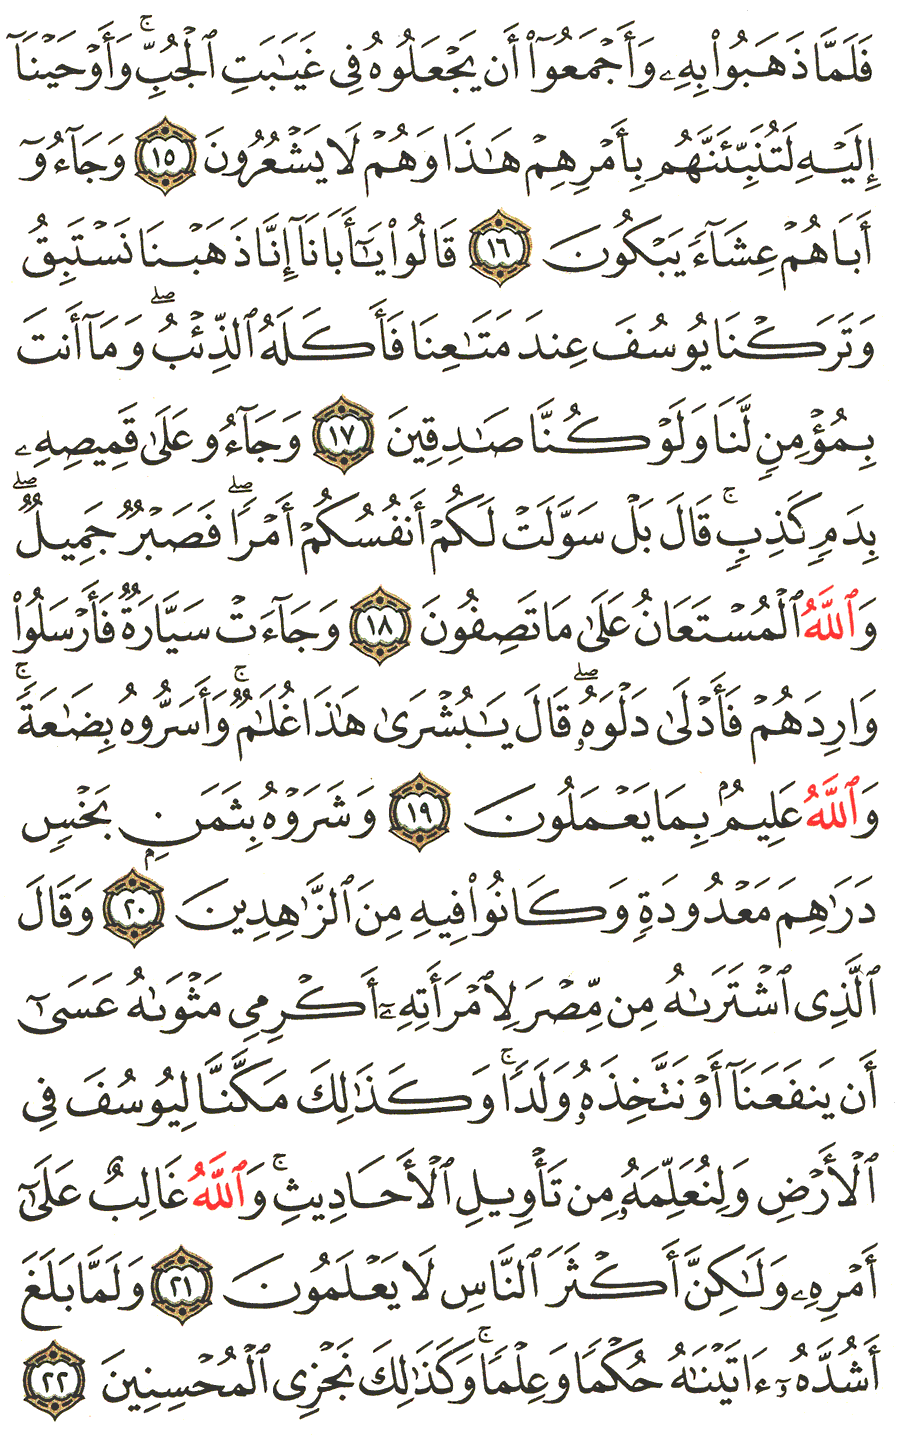 الصفحة رقم 237  من القرآن الكريم مكتوبة من المصحف